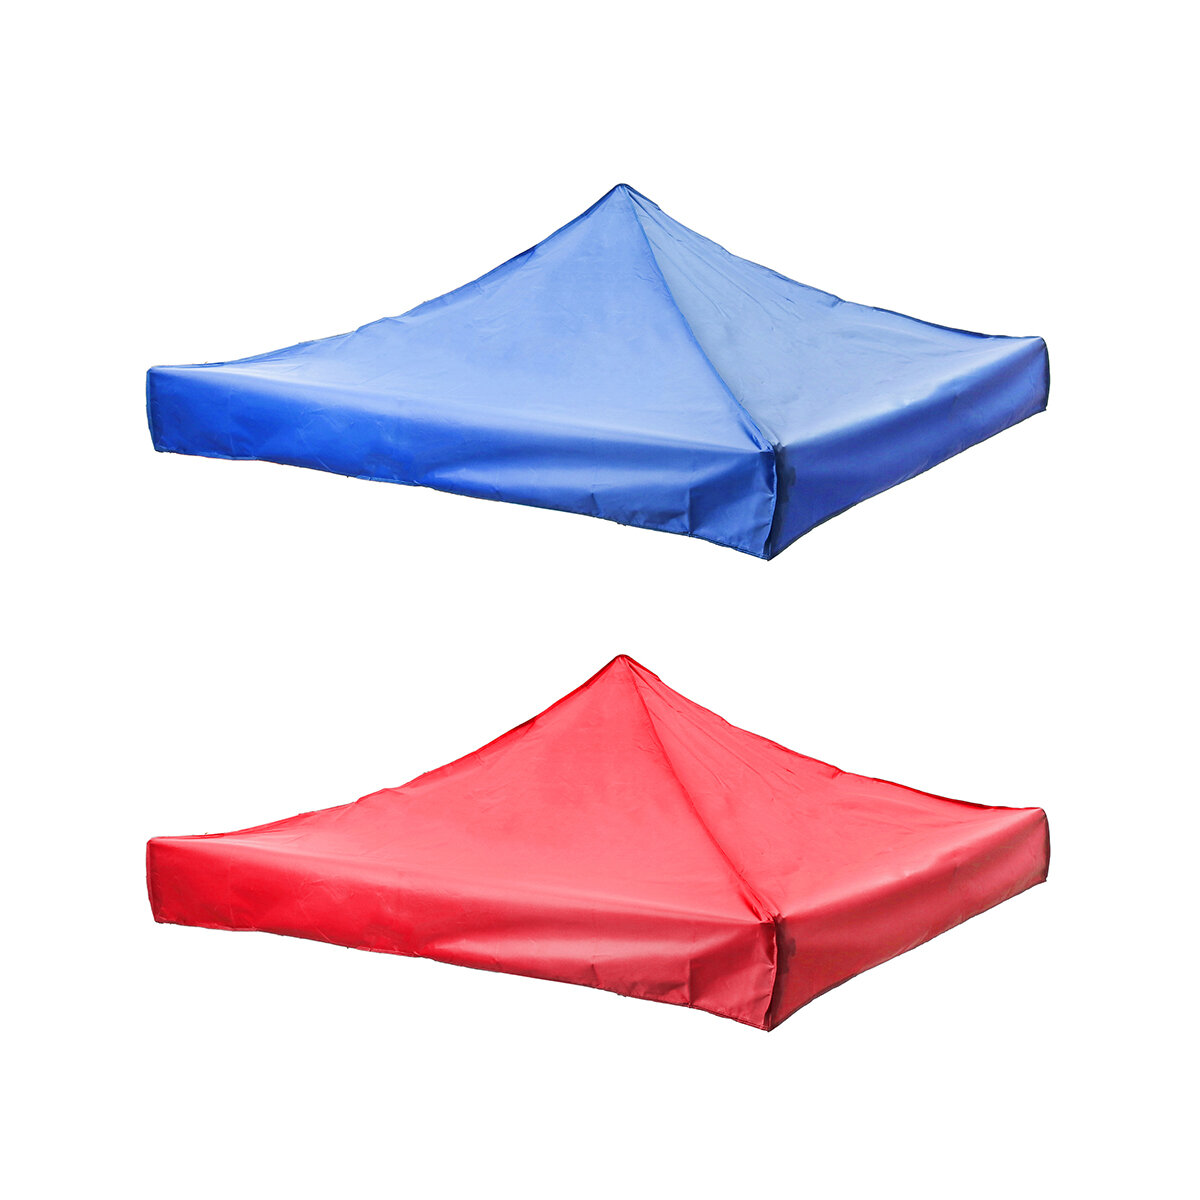 3 x 4,5 m Außenzeltüberdachung Ersatztuch Hersteller Werbung Faltausstellungszelt Regenschirm Oberabdeckung Tuch